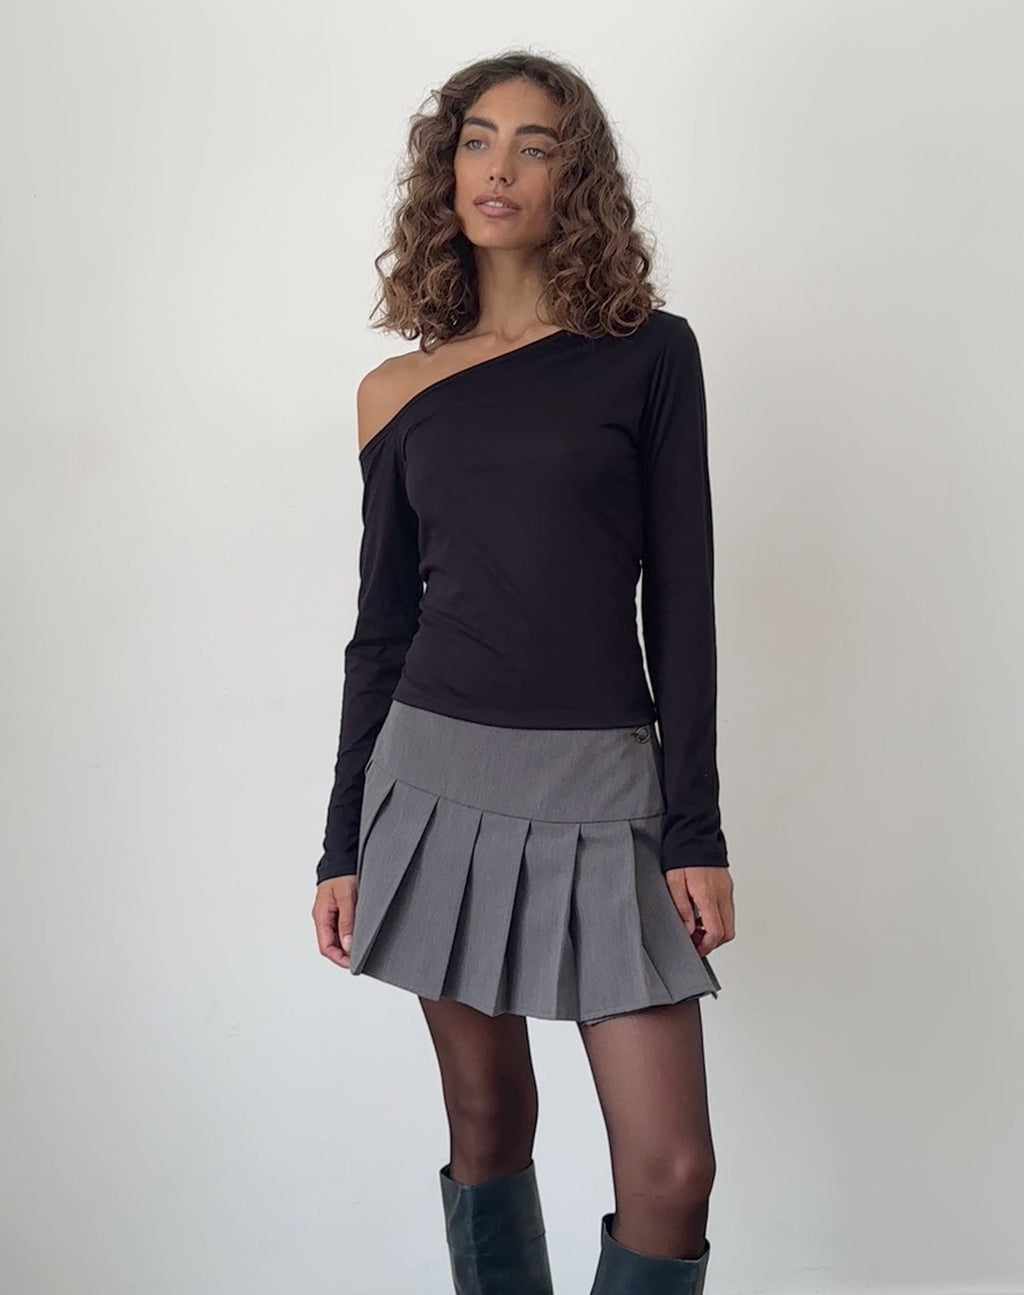 Ledez - Top asymétrique en jersey de tissu noir